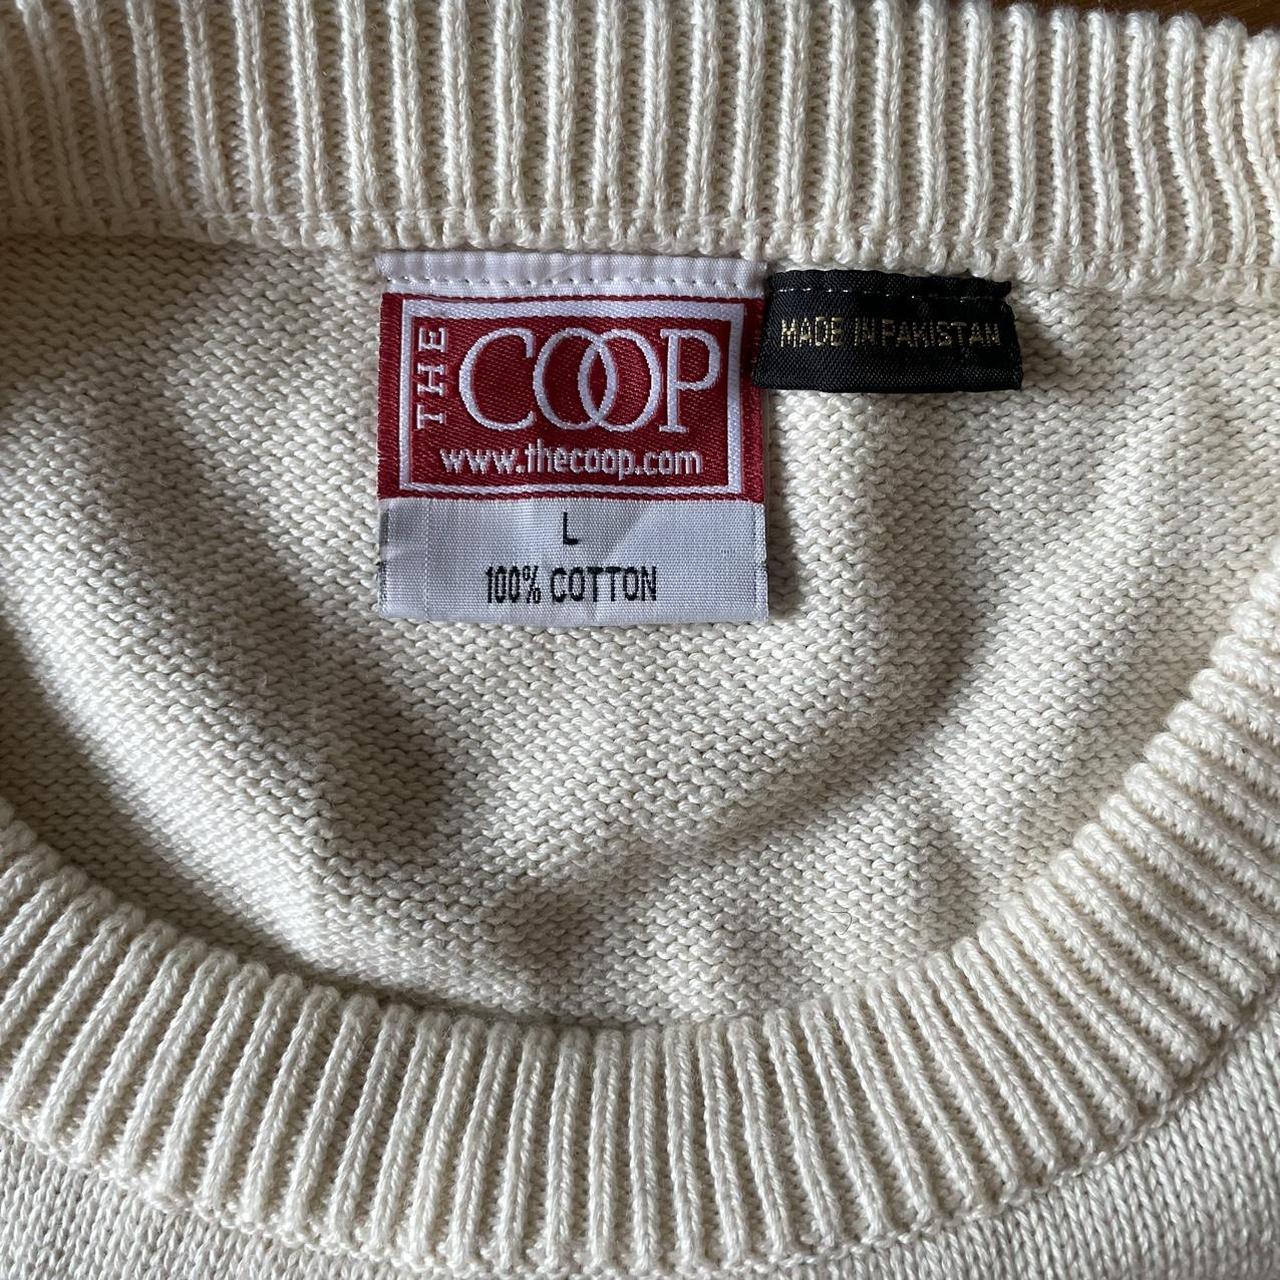 Rare Vintage Harvard Coop Letterman Sweater Getting... - Depop